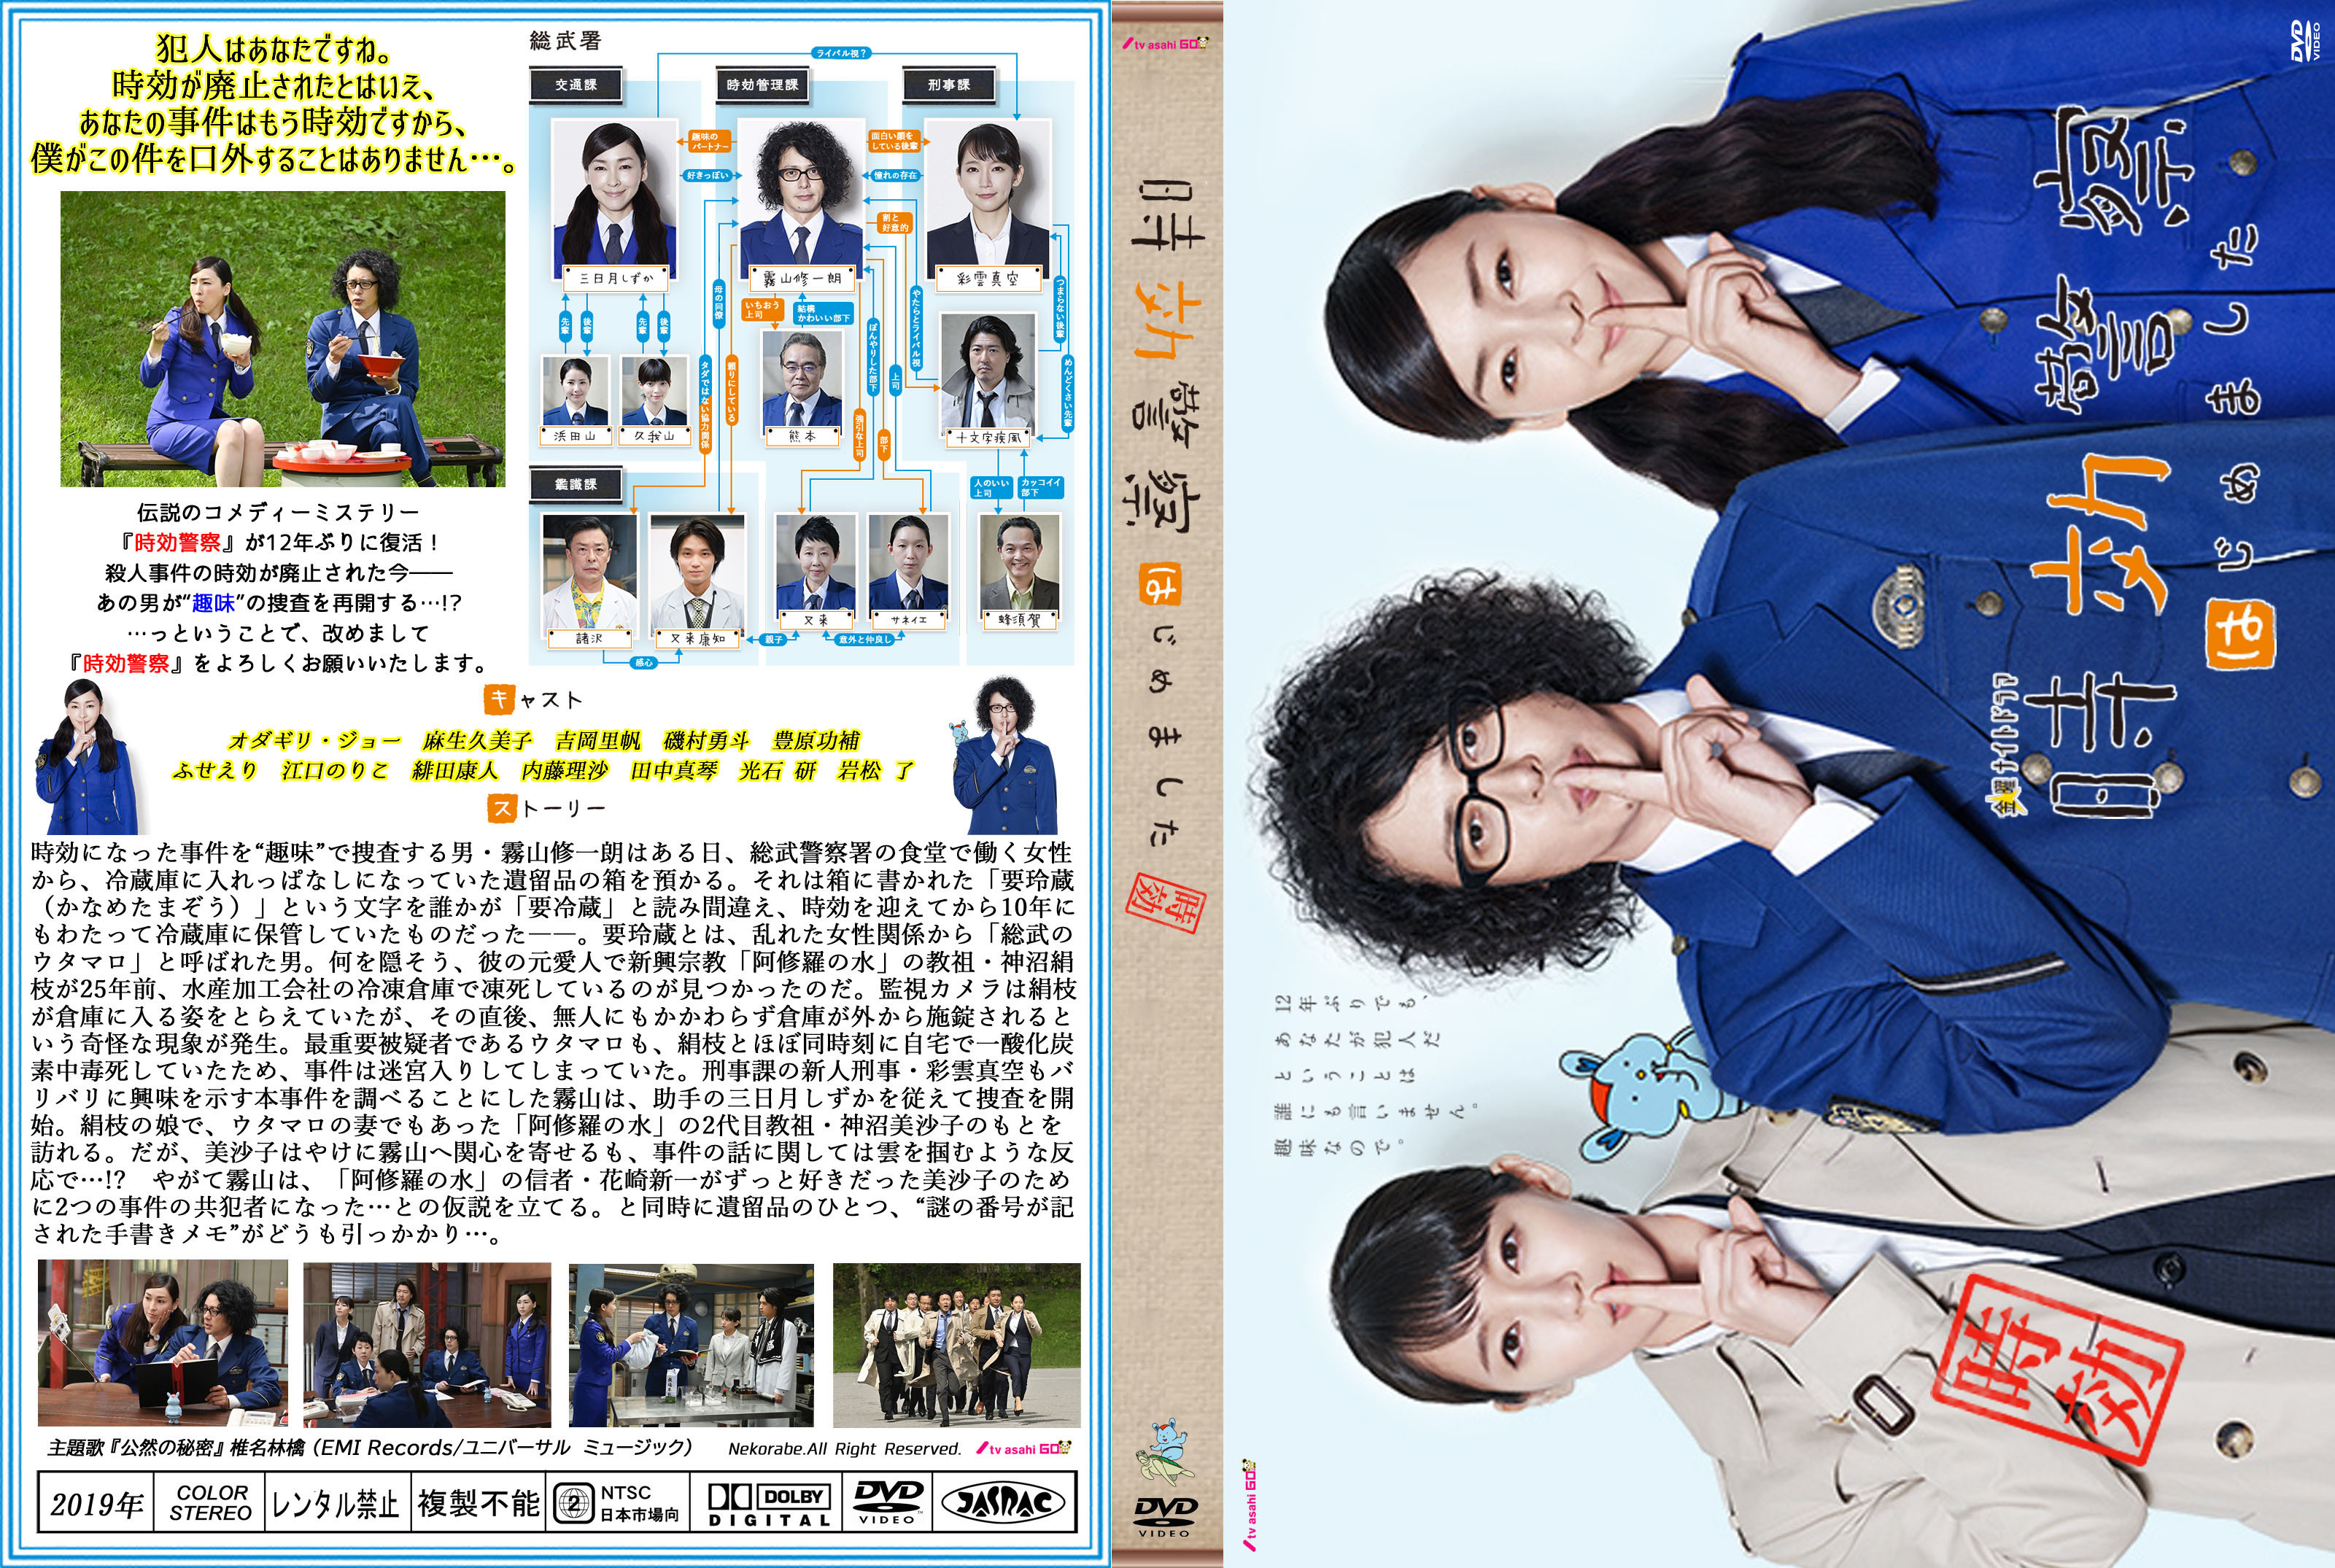 時効警察はじめました DVD BOX - 通販 - gofukuyasan.com